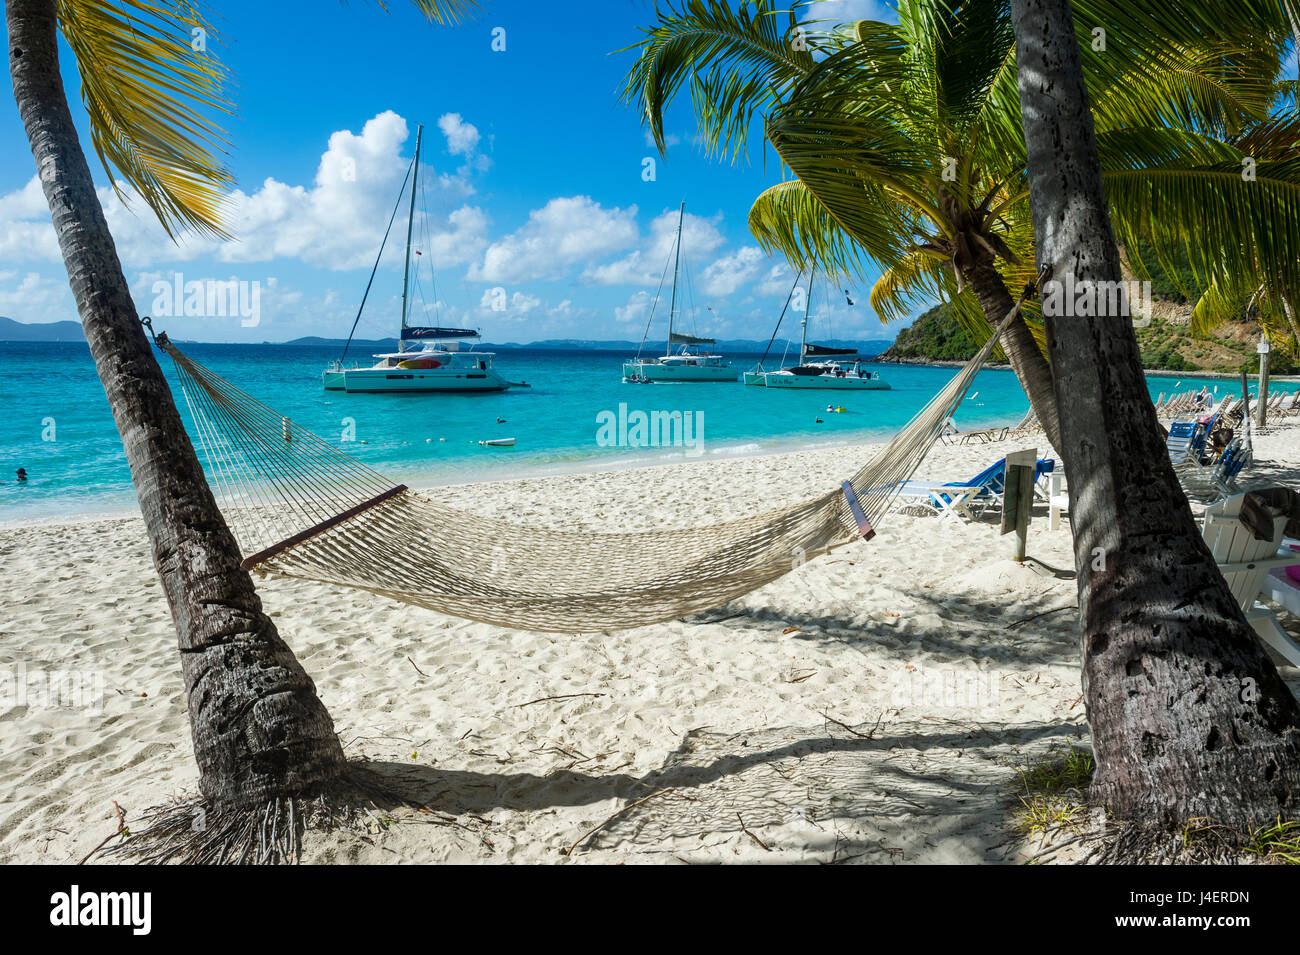 Hängematte hängen berühmte White Bay, Jost Van Dyke, British Virgin Islands, West Indies, Karibik, Mittelamerika Stockfoto